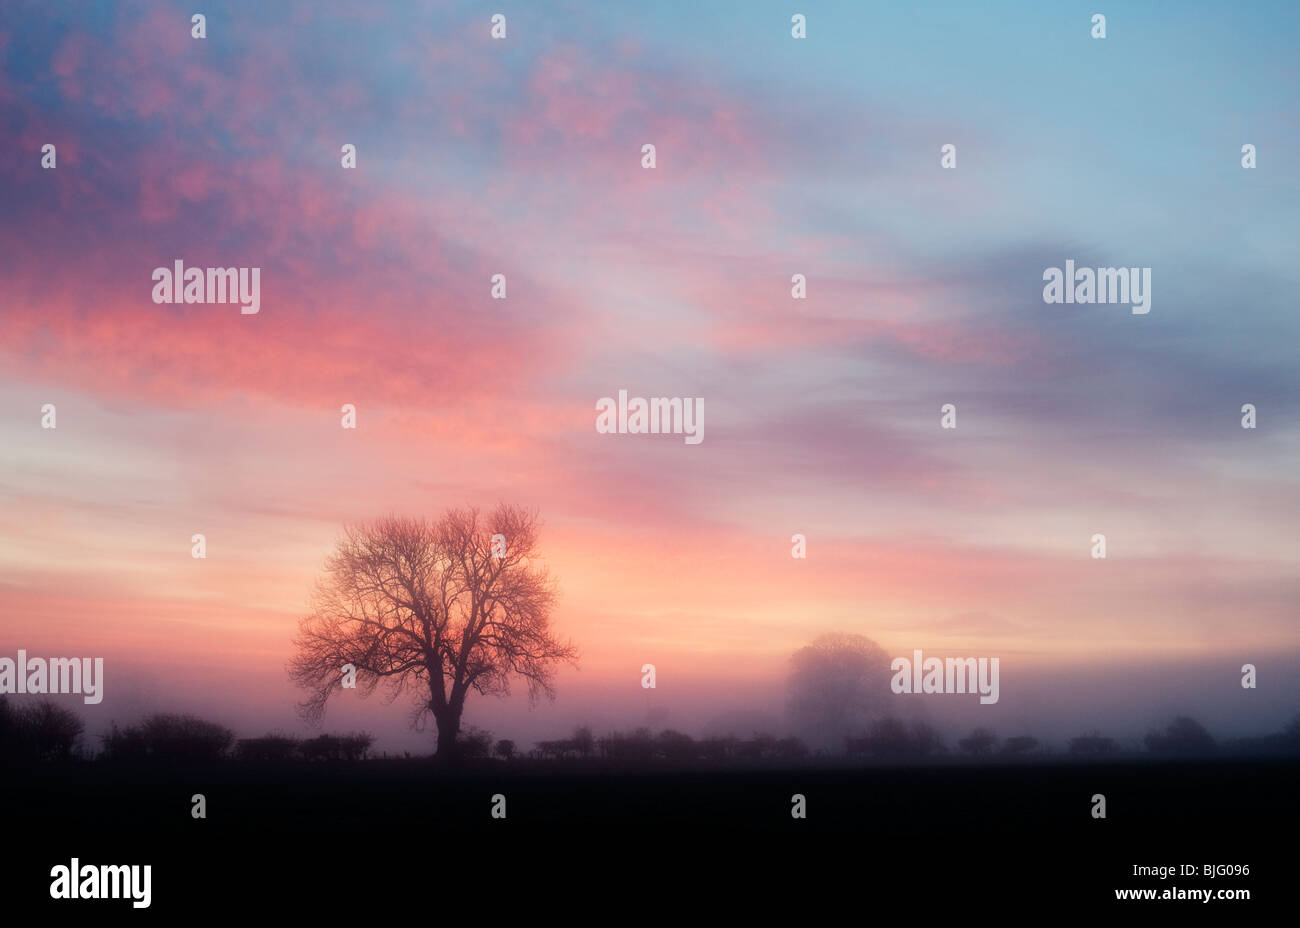 Eiche-Silhouette in der Morgendämmerung an einem dunstigen nebligen Morgen in der englischen Landschaft Stockfoto